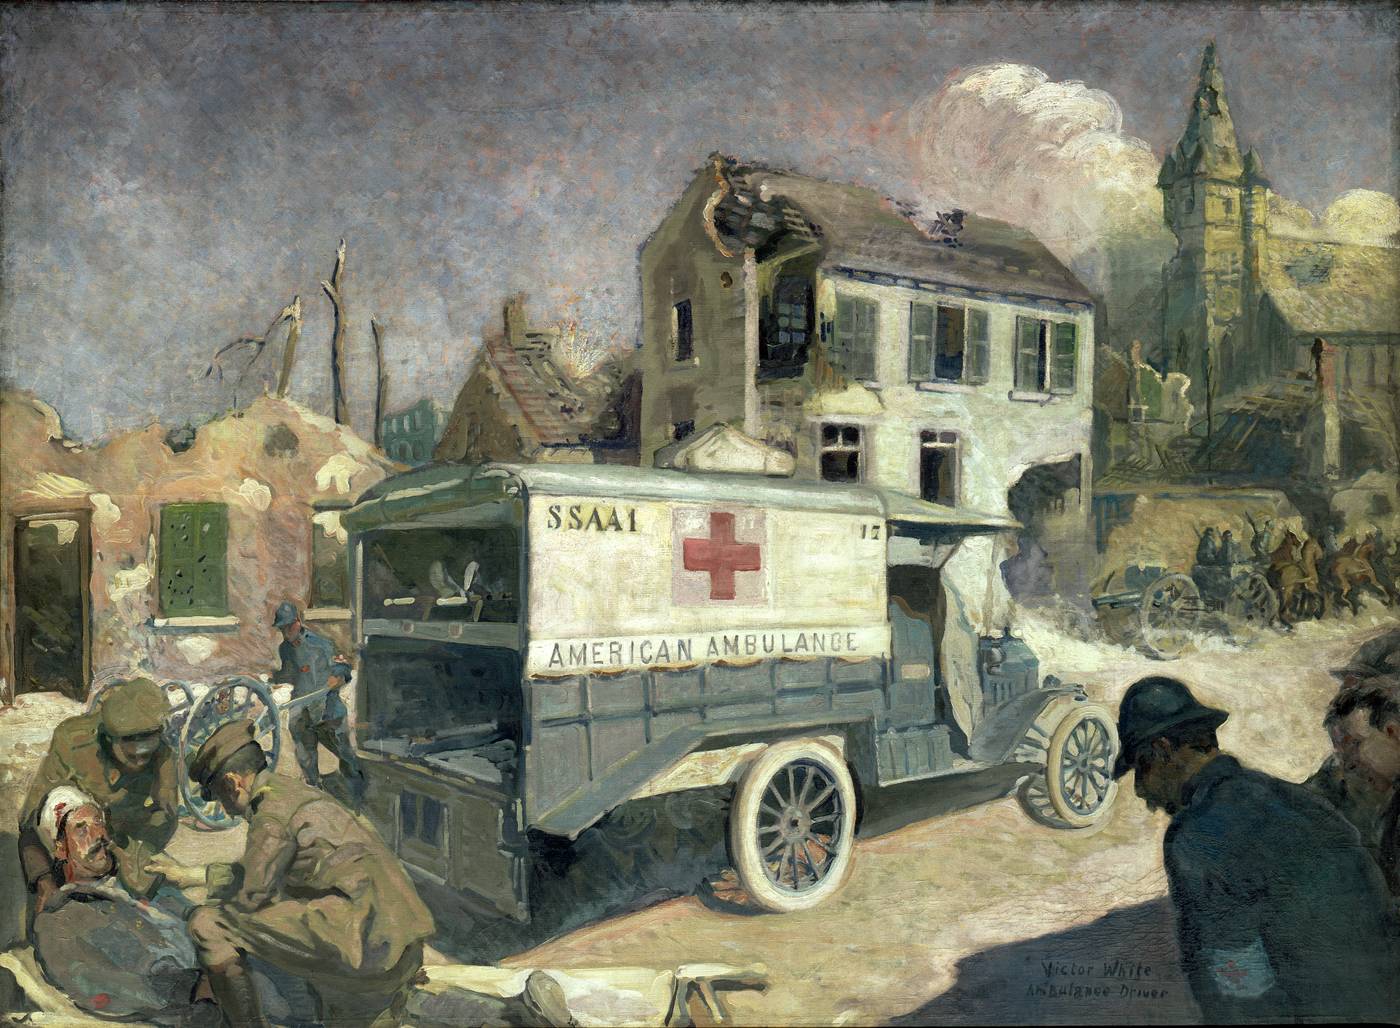 Una storia straordinaria: dalle ambulanze di guerra agli scambi interculturali